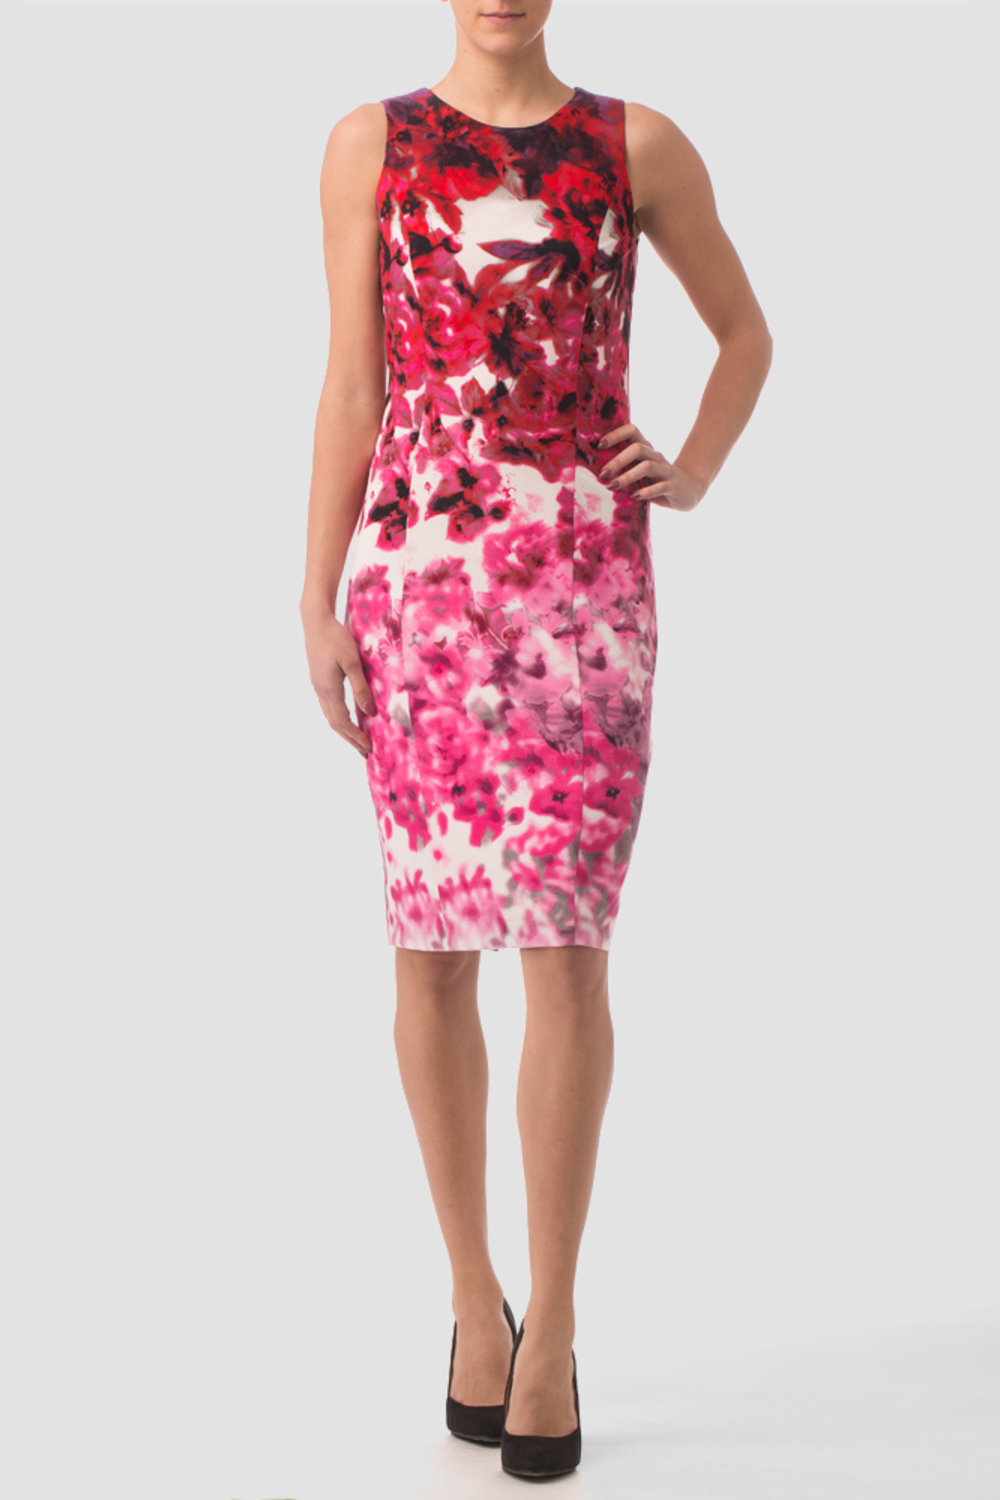 Joseph Ribkoff dress style 163692. Pink/multi